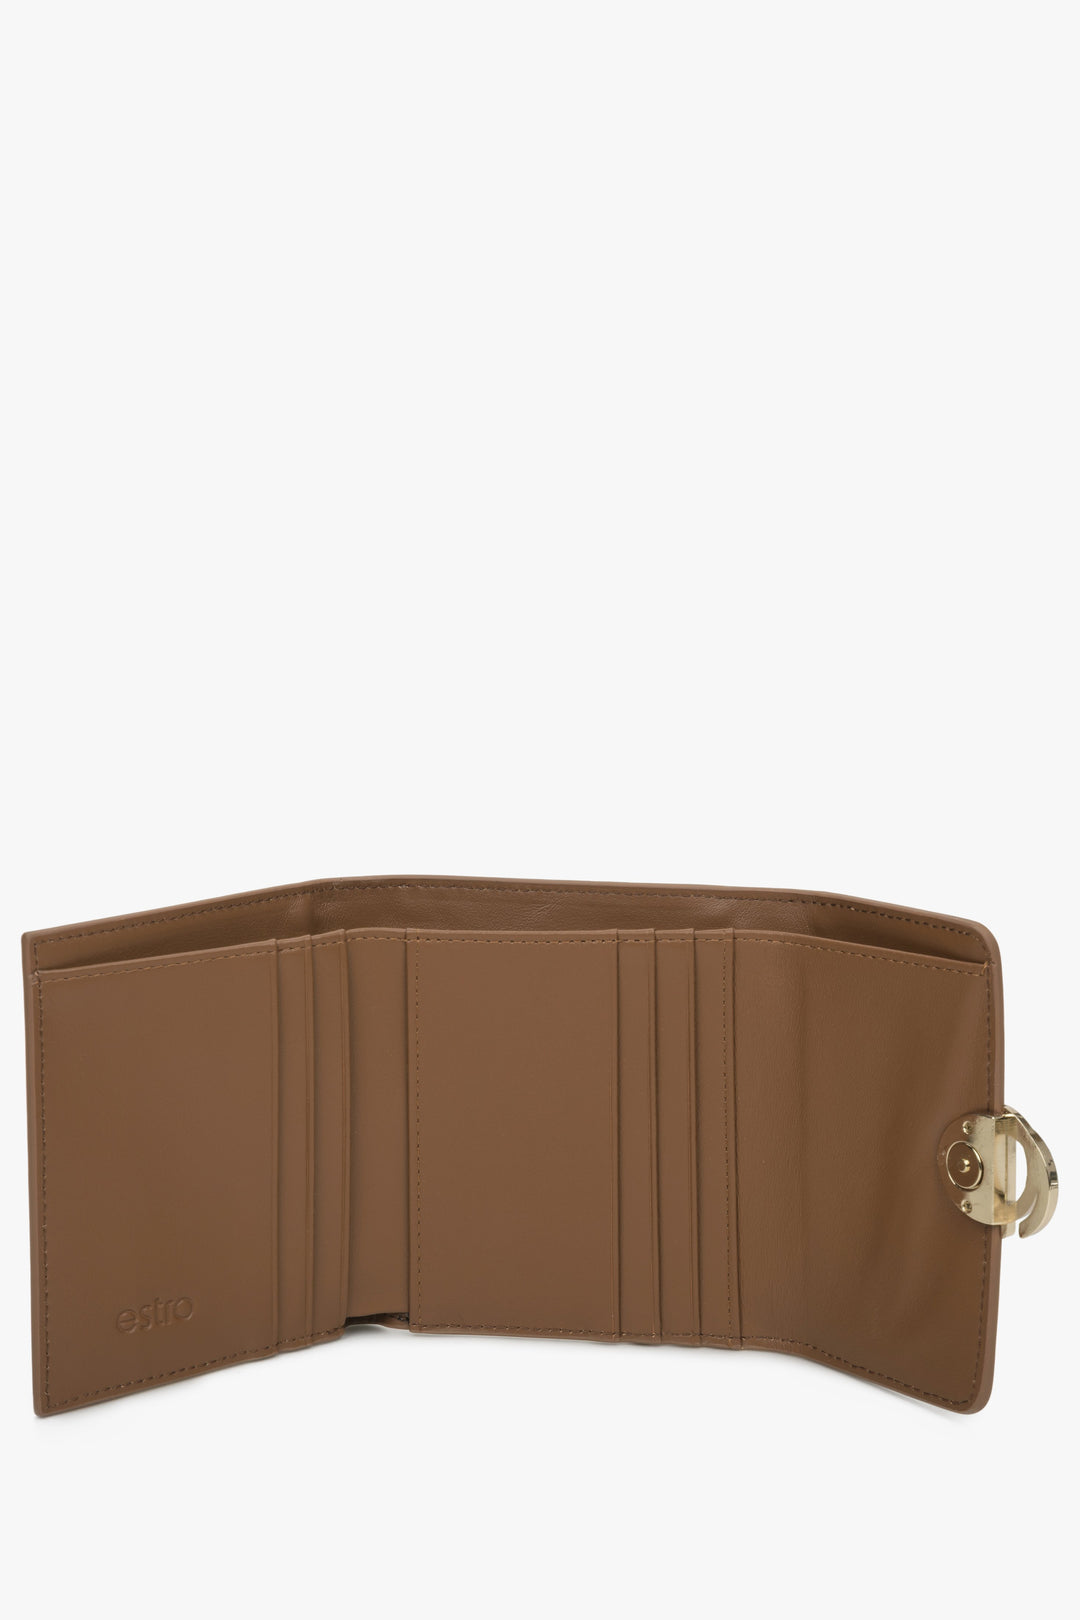 Tri-fold brown women's wallet - interior.